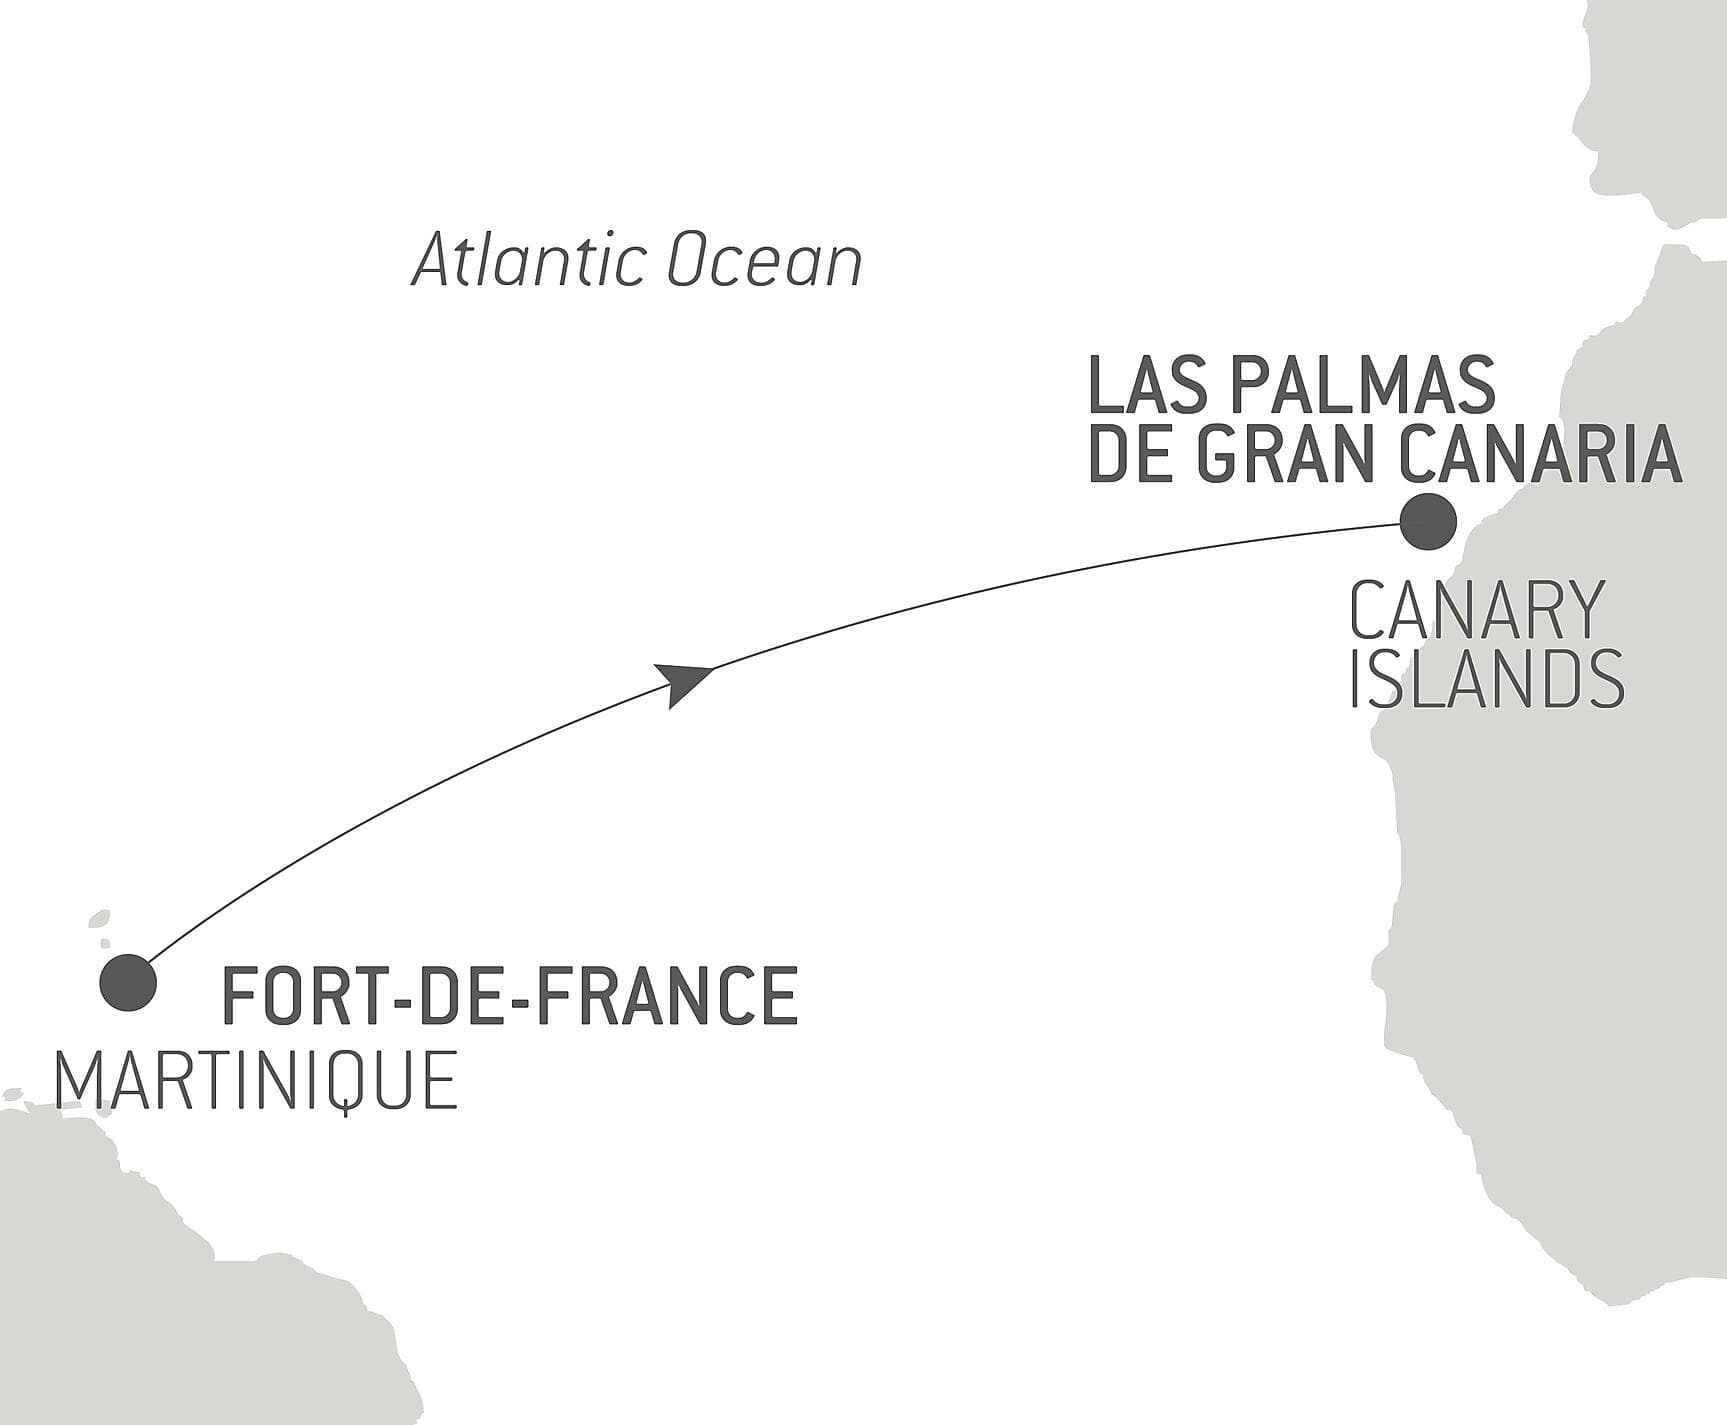 Ocean Voyage: Fort-de-France - Las Palmas